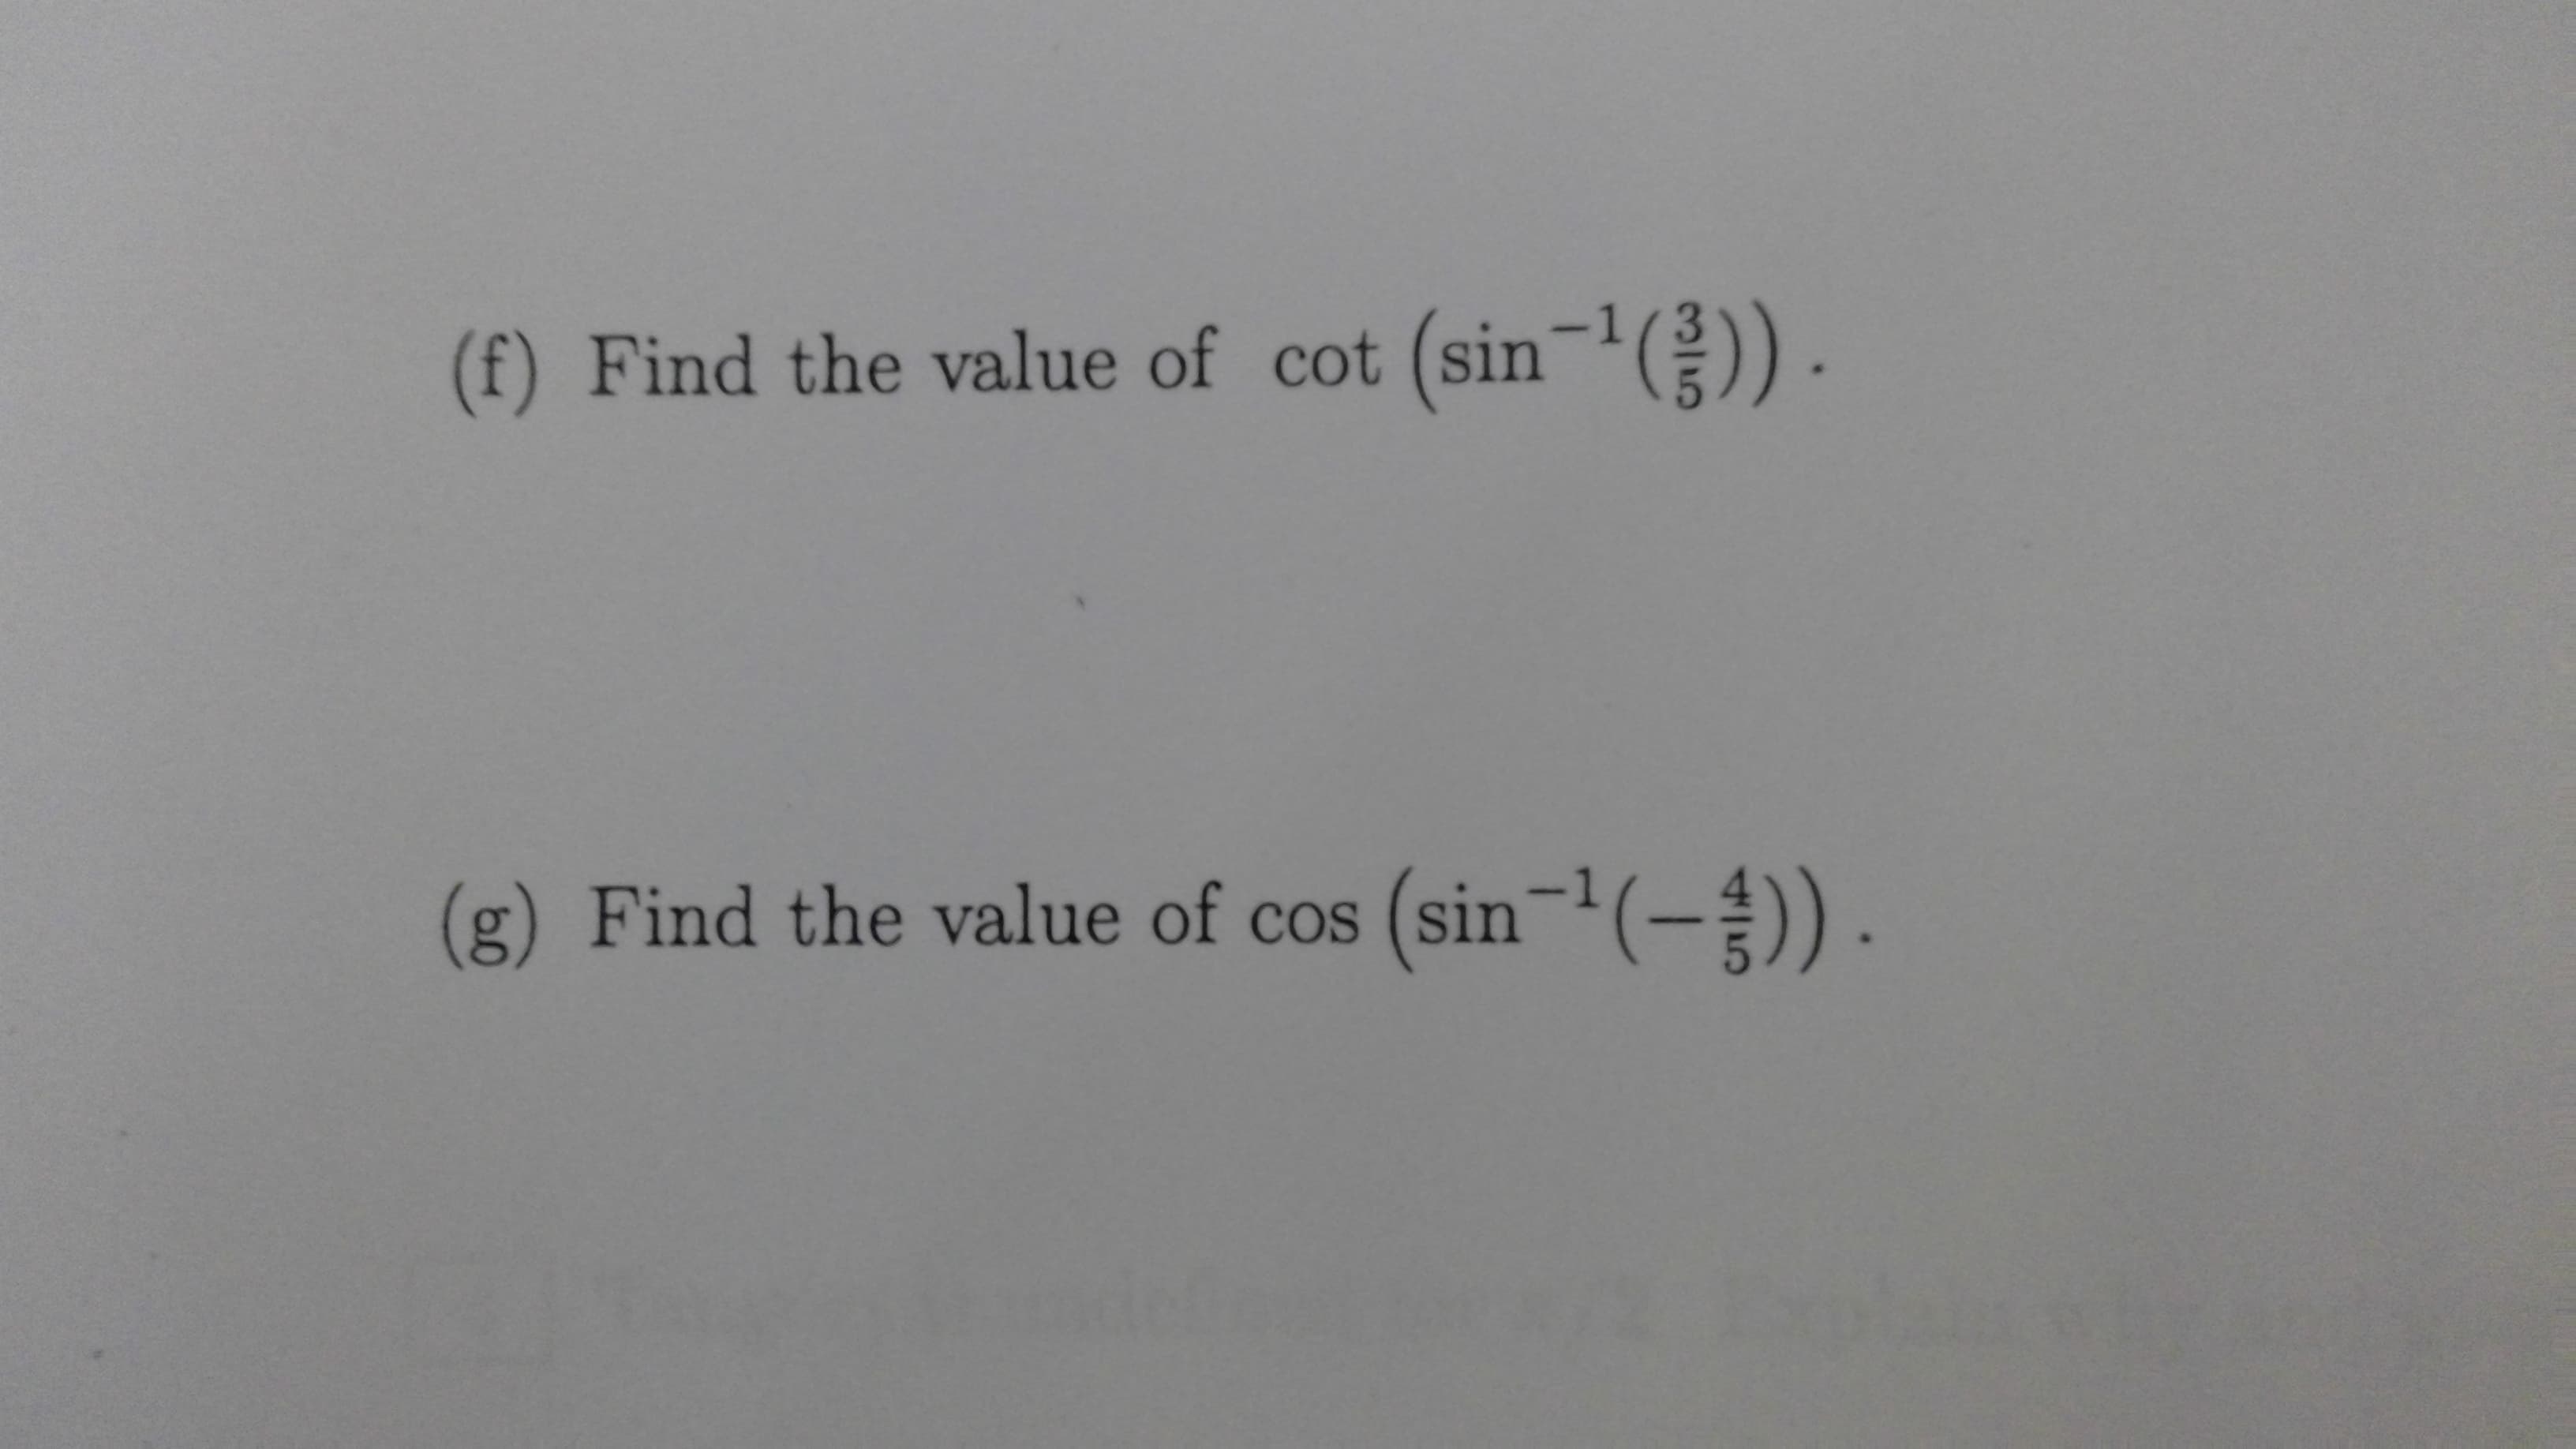 -1(총)).
(f) Find the value of cot (sin-
(g) Find the value of cos (sin-(-) .
